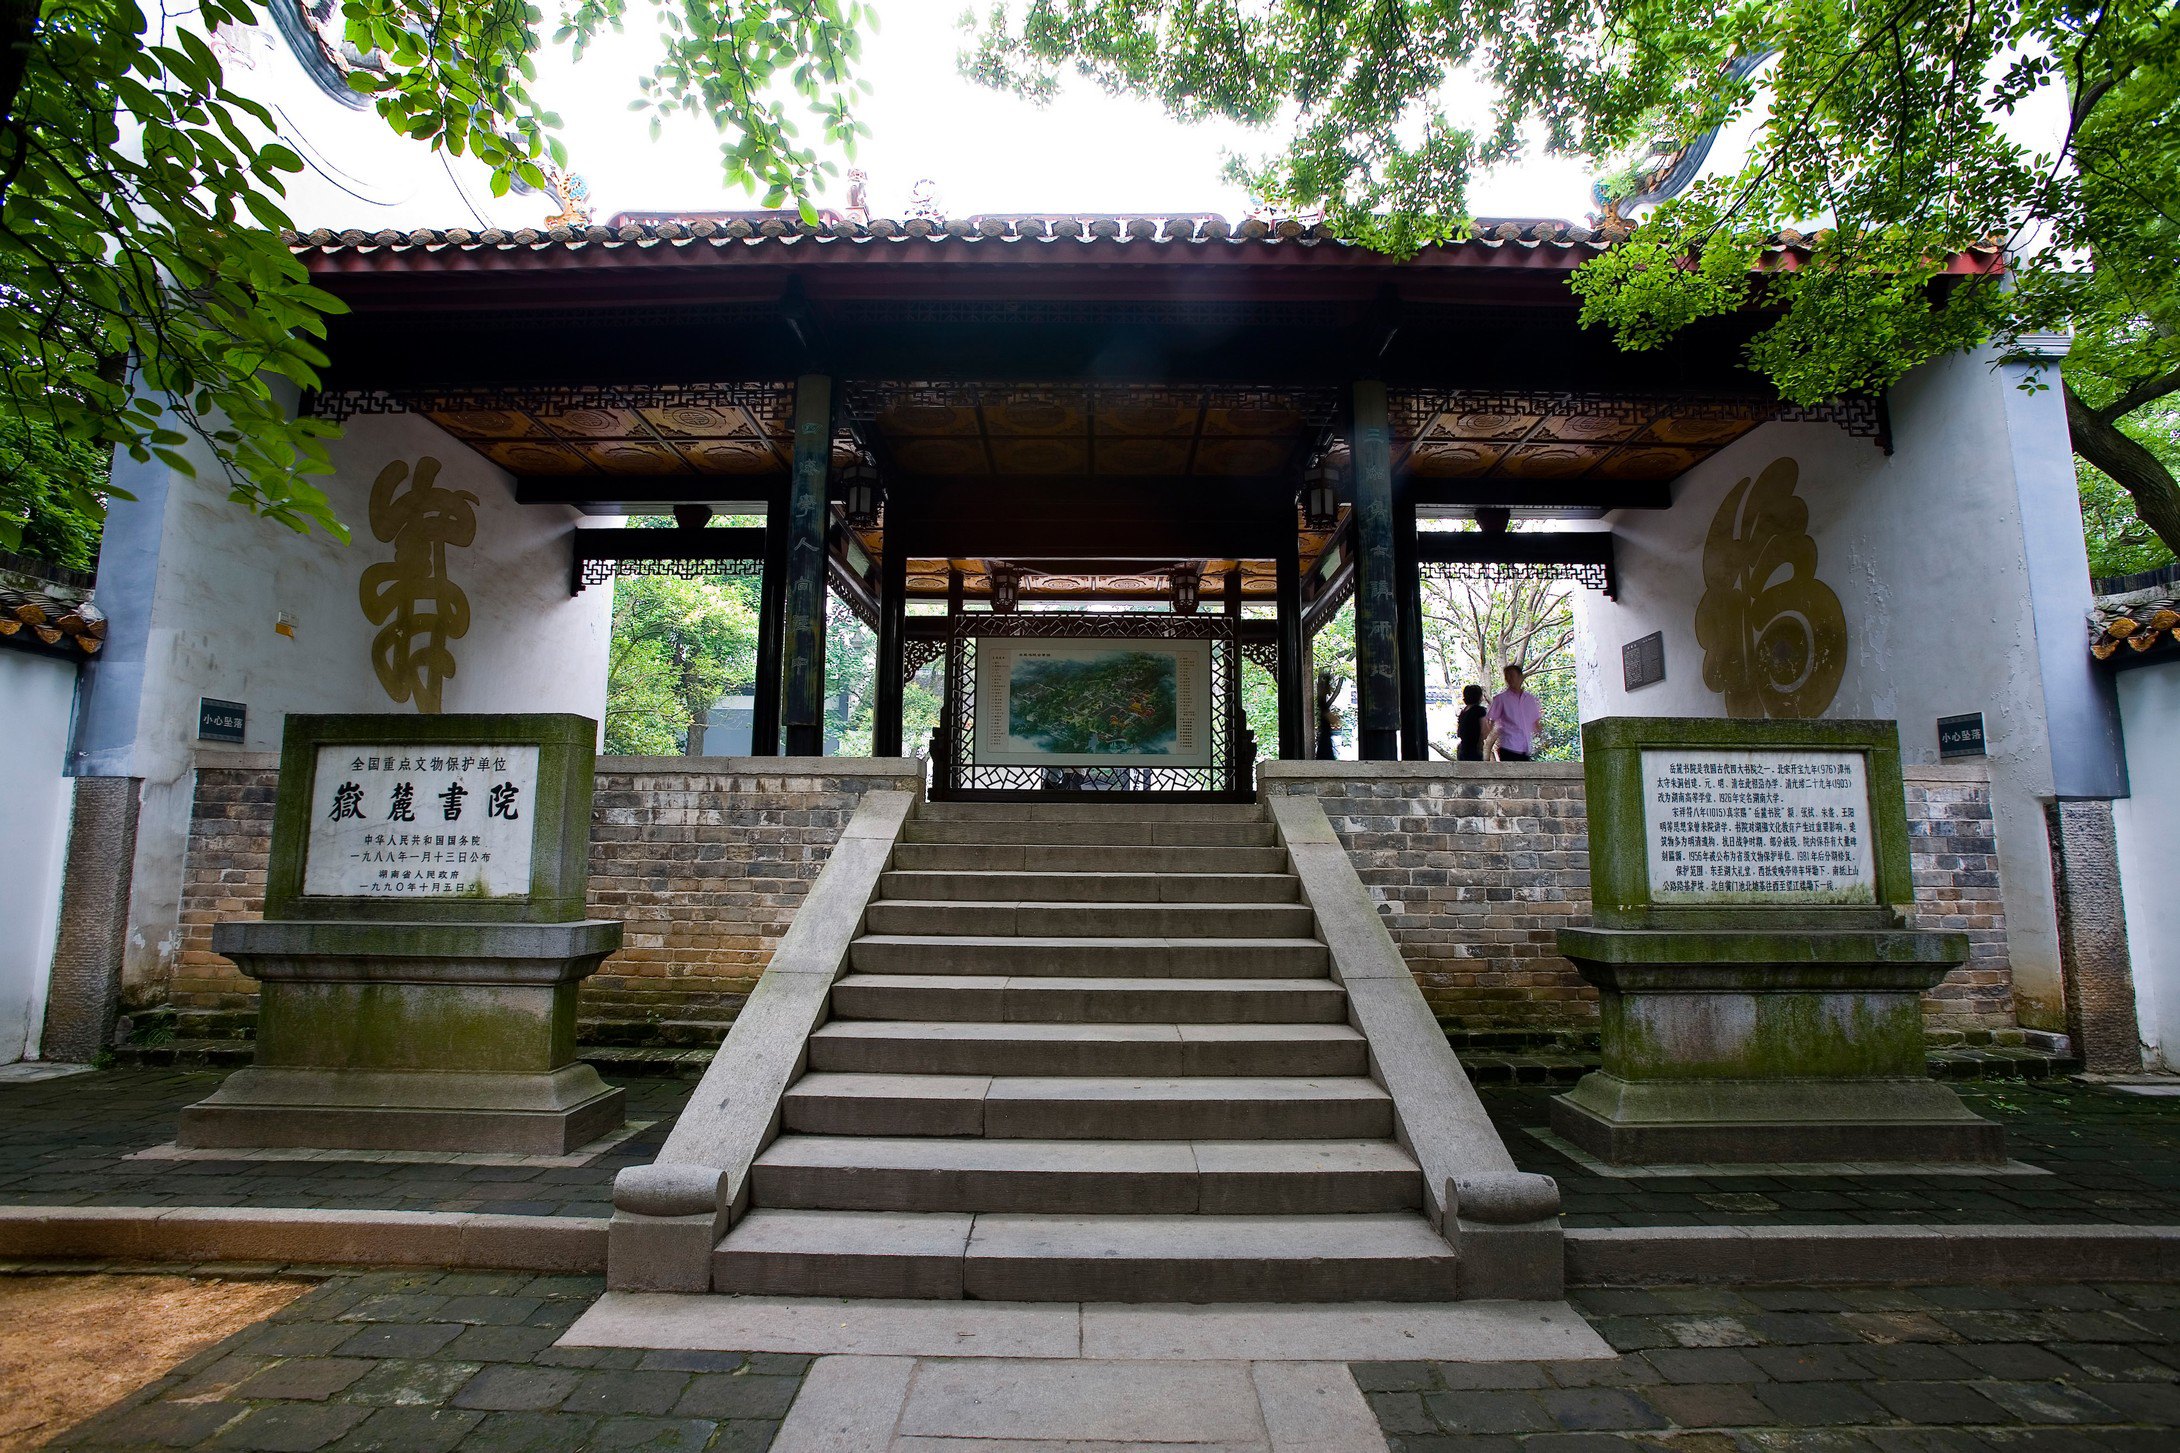 【携程攻略】长沙岳麓书院景点,岳麓书院是古代汉族书院建筑，属于中国历史上著名的四大书院之一。从…